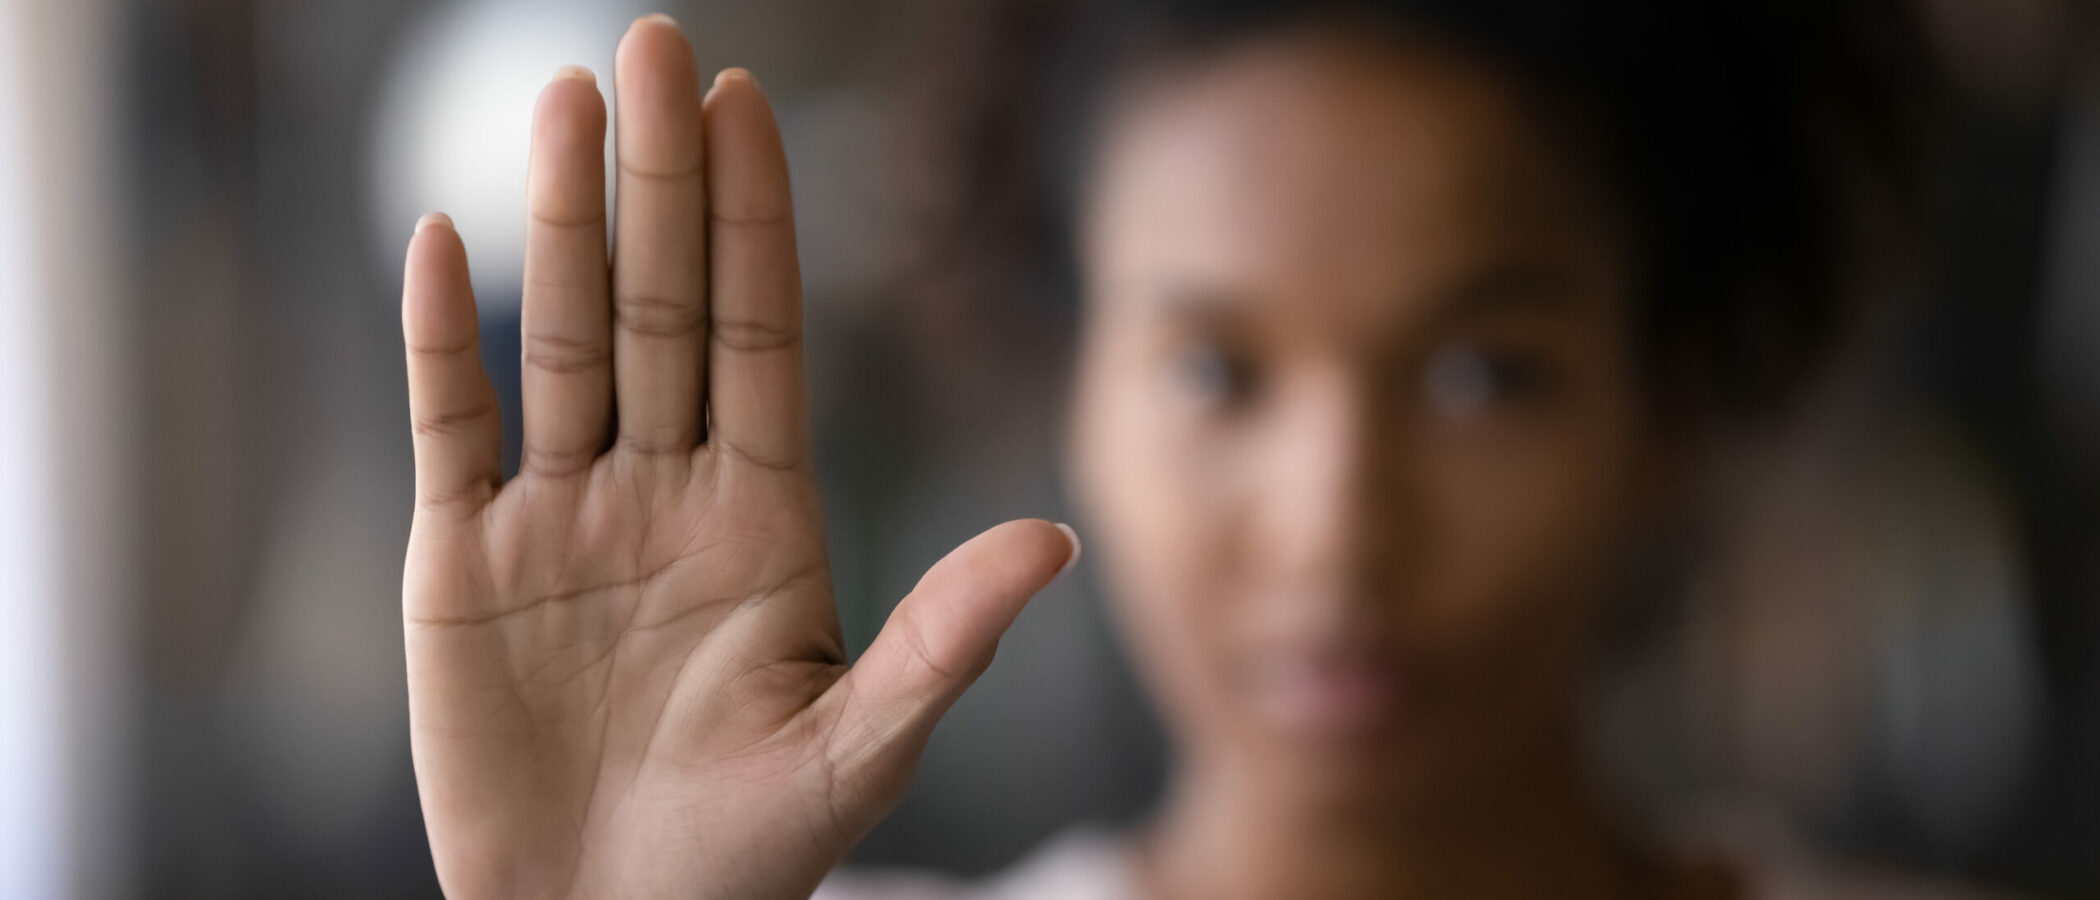 Sexuelle Belästigung, Frau zeigt Hand, Stopp